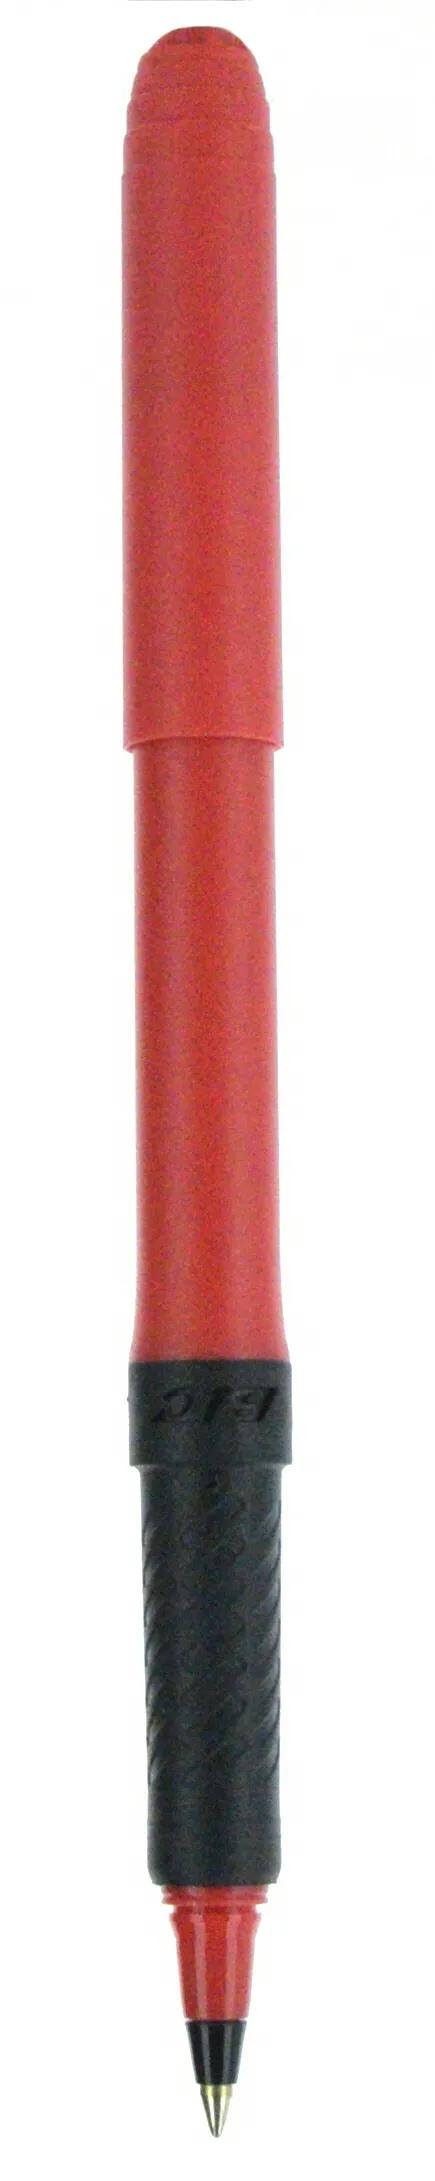 BIC® Grip Roller Pen 129 of 147